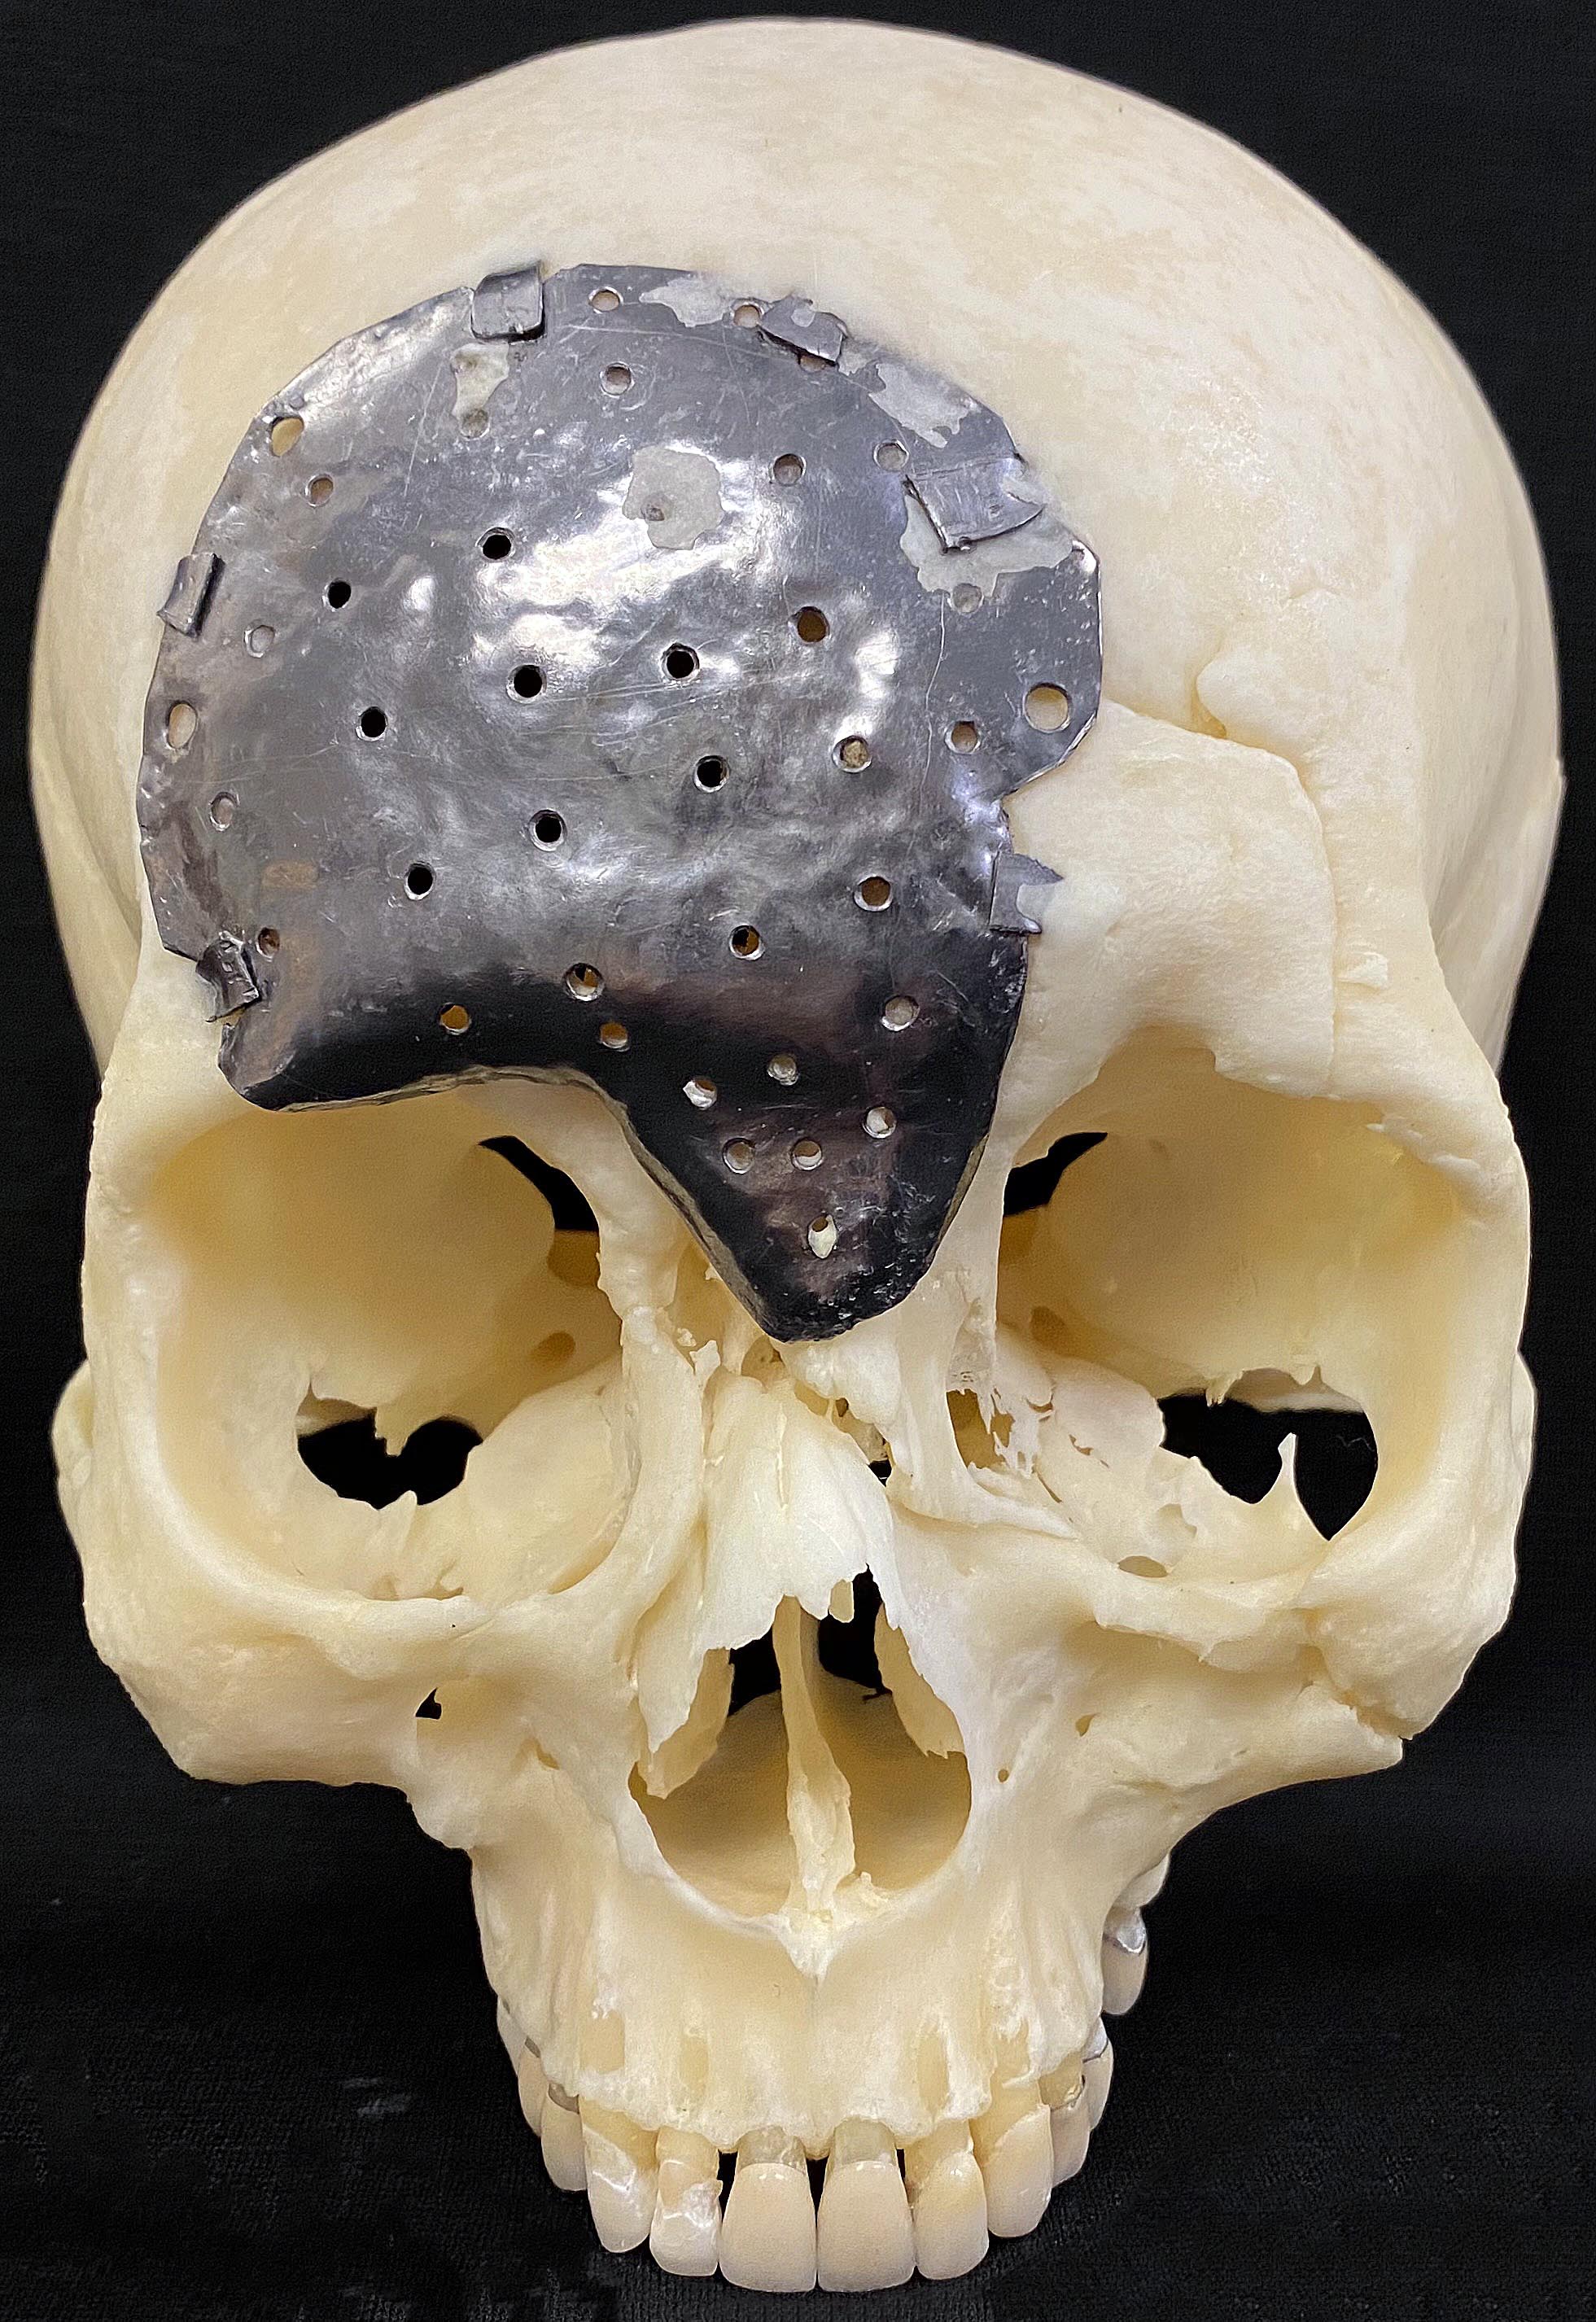 skeletal skull with metal implant